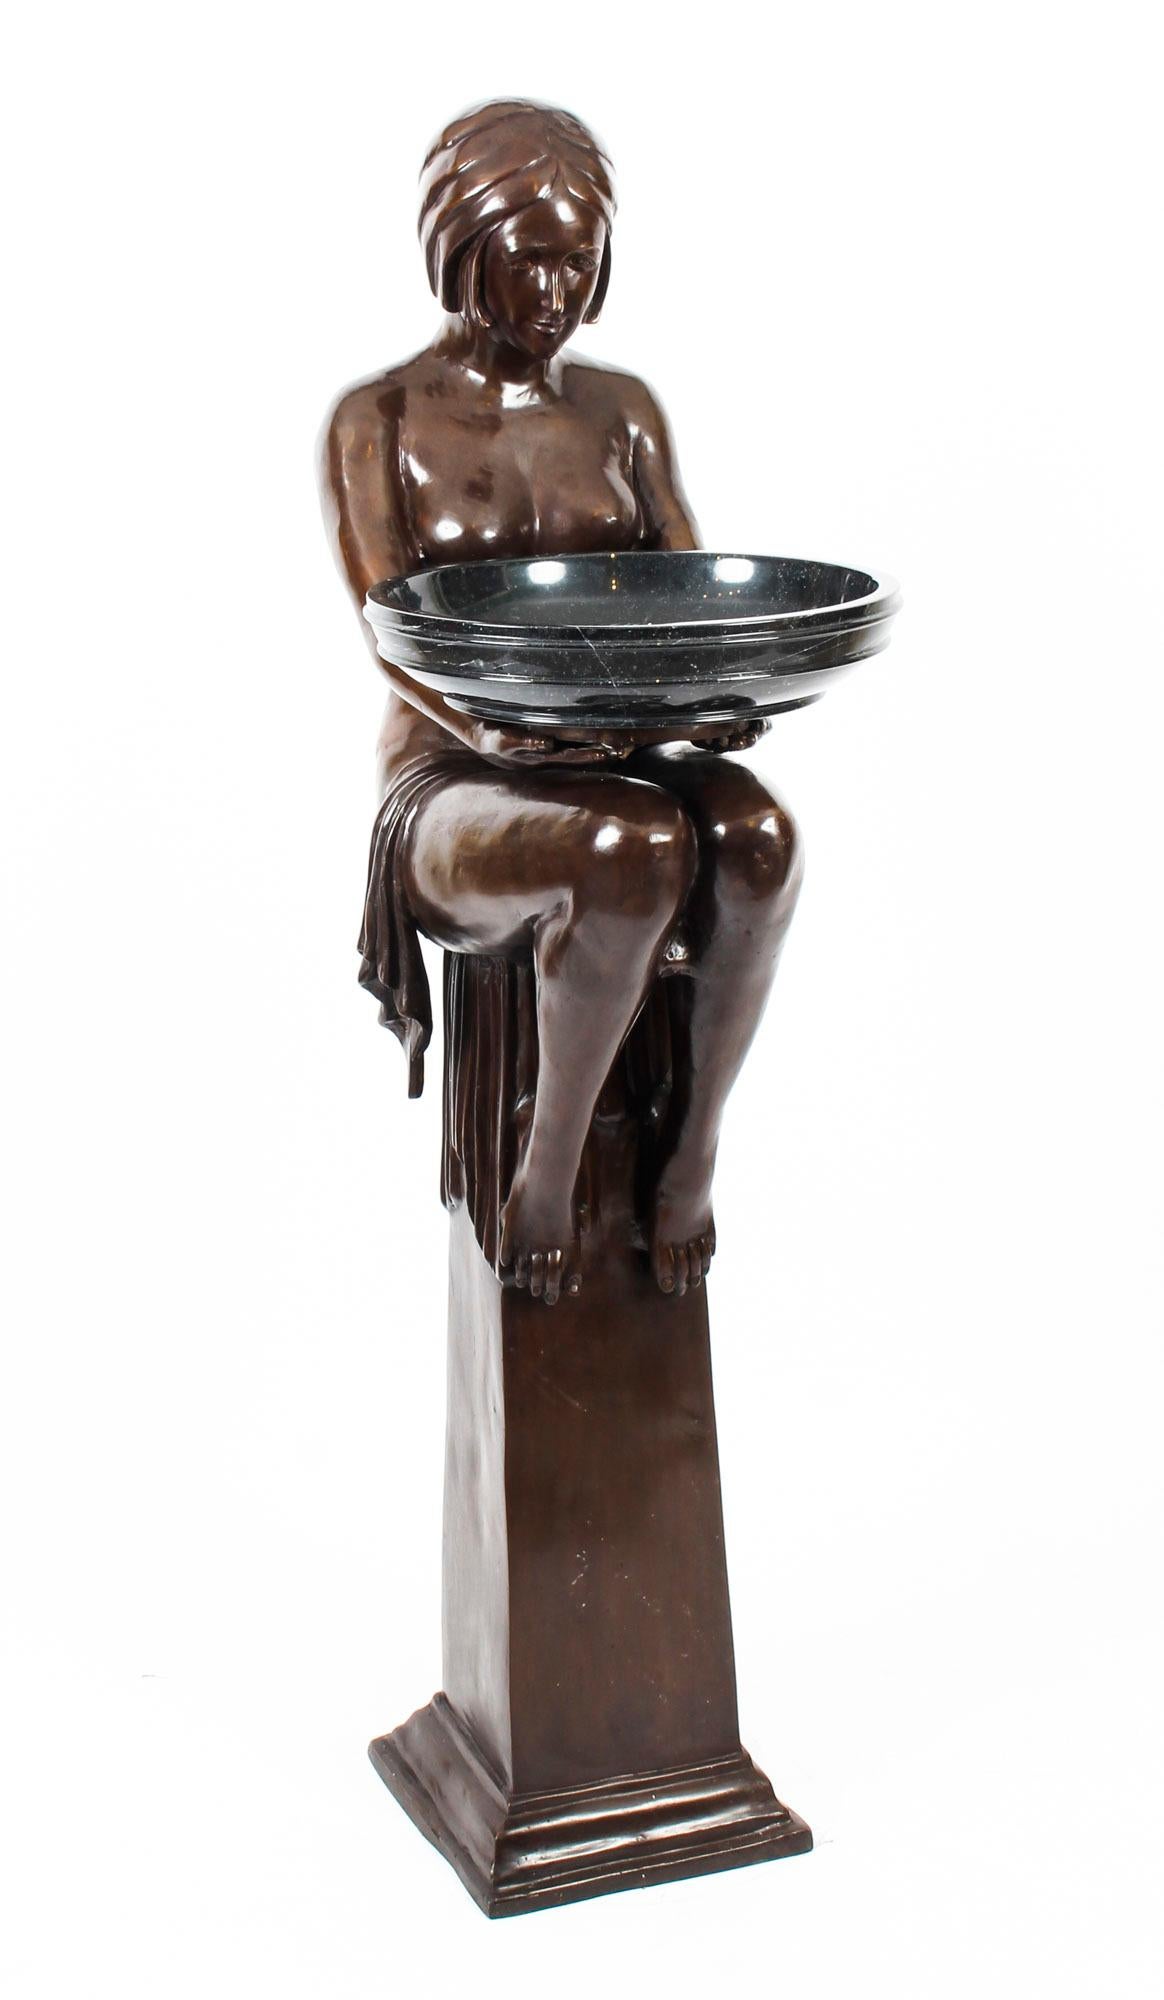 Il s'agit d'une sculpture Biba vintage en bronze massif de grande qualité et de style Art Deco, représentant une femme assise sophistiquée, datant du dernier quart du 20e siècle.

Ce bronze frappant représente une jolie femme à moitié nue avec le